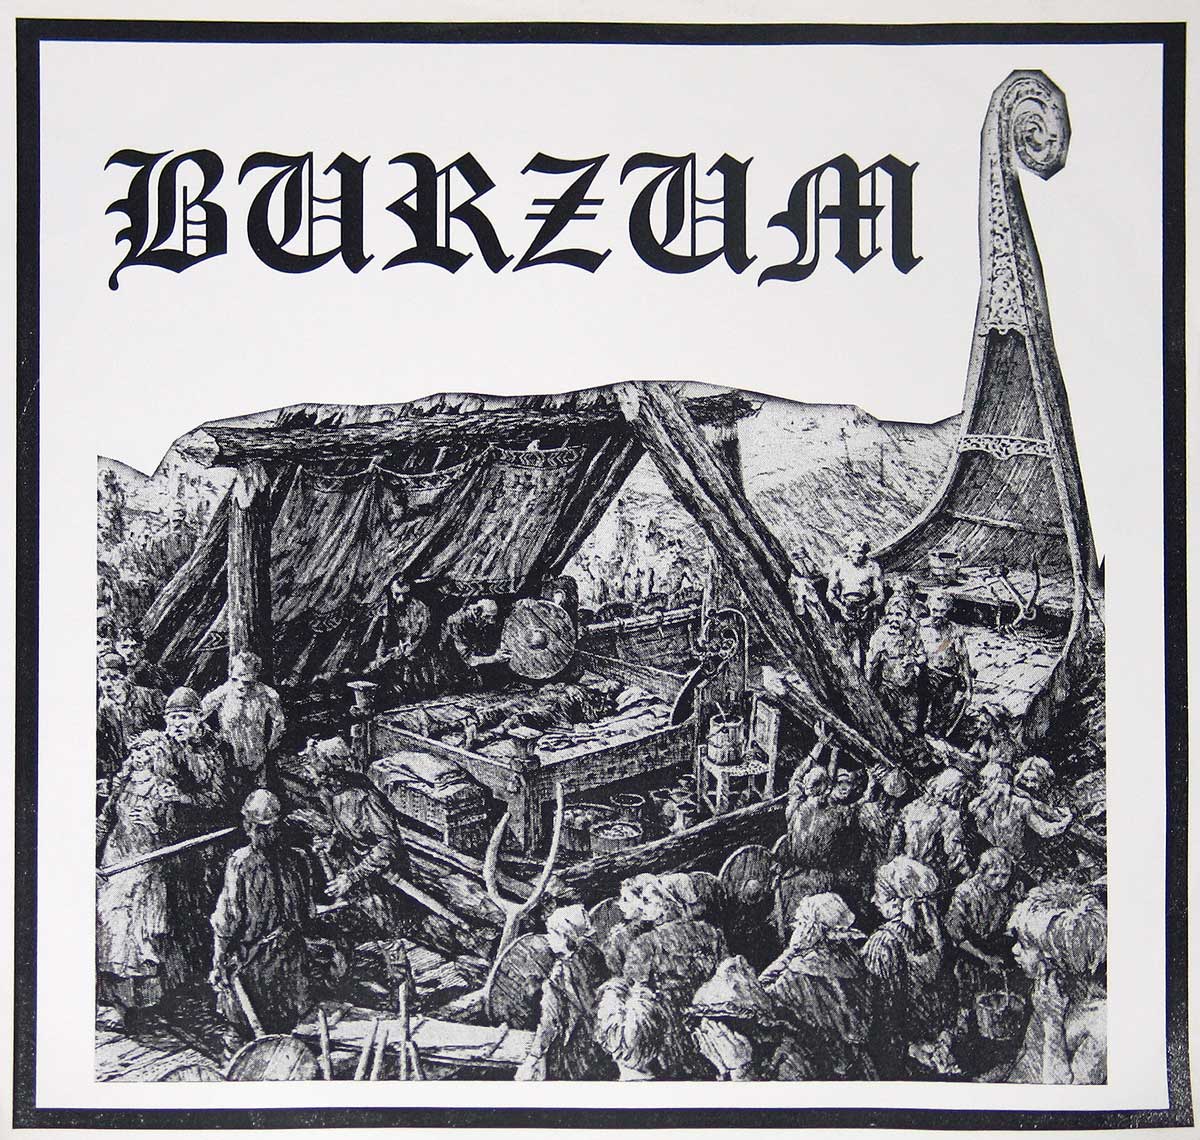 large album front cover photo of: Burzum Demo LP Vinyl Maniac records 